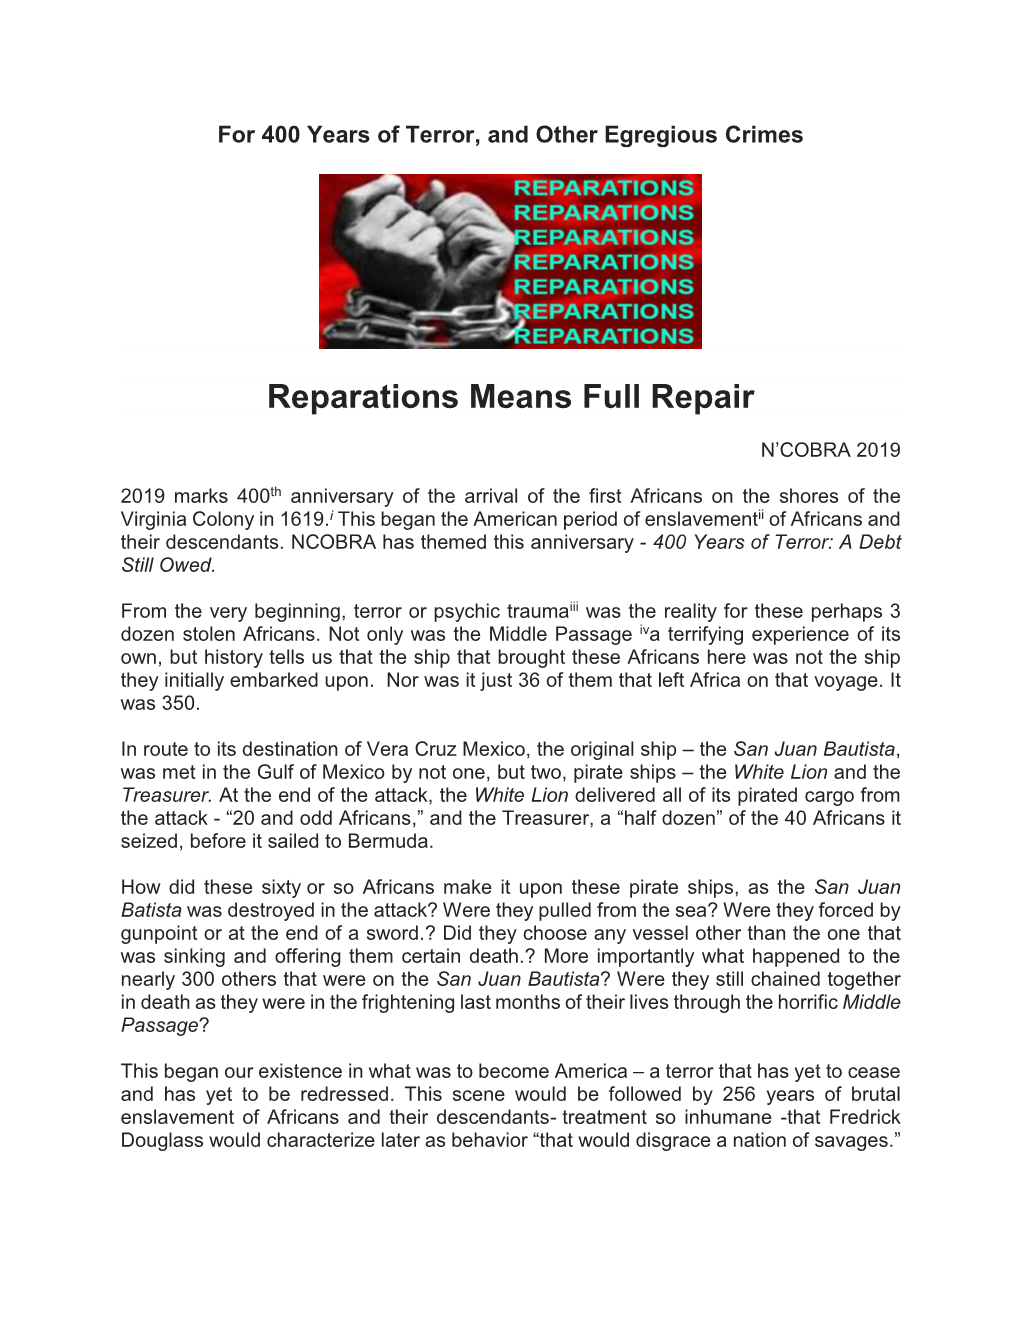 Reparations Means Full Repair